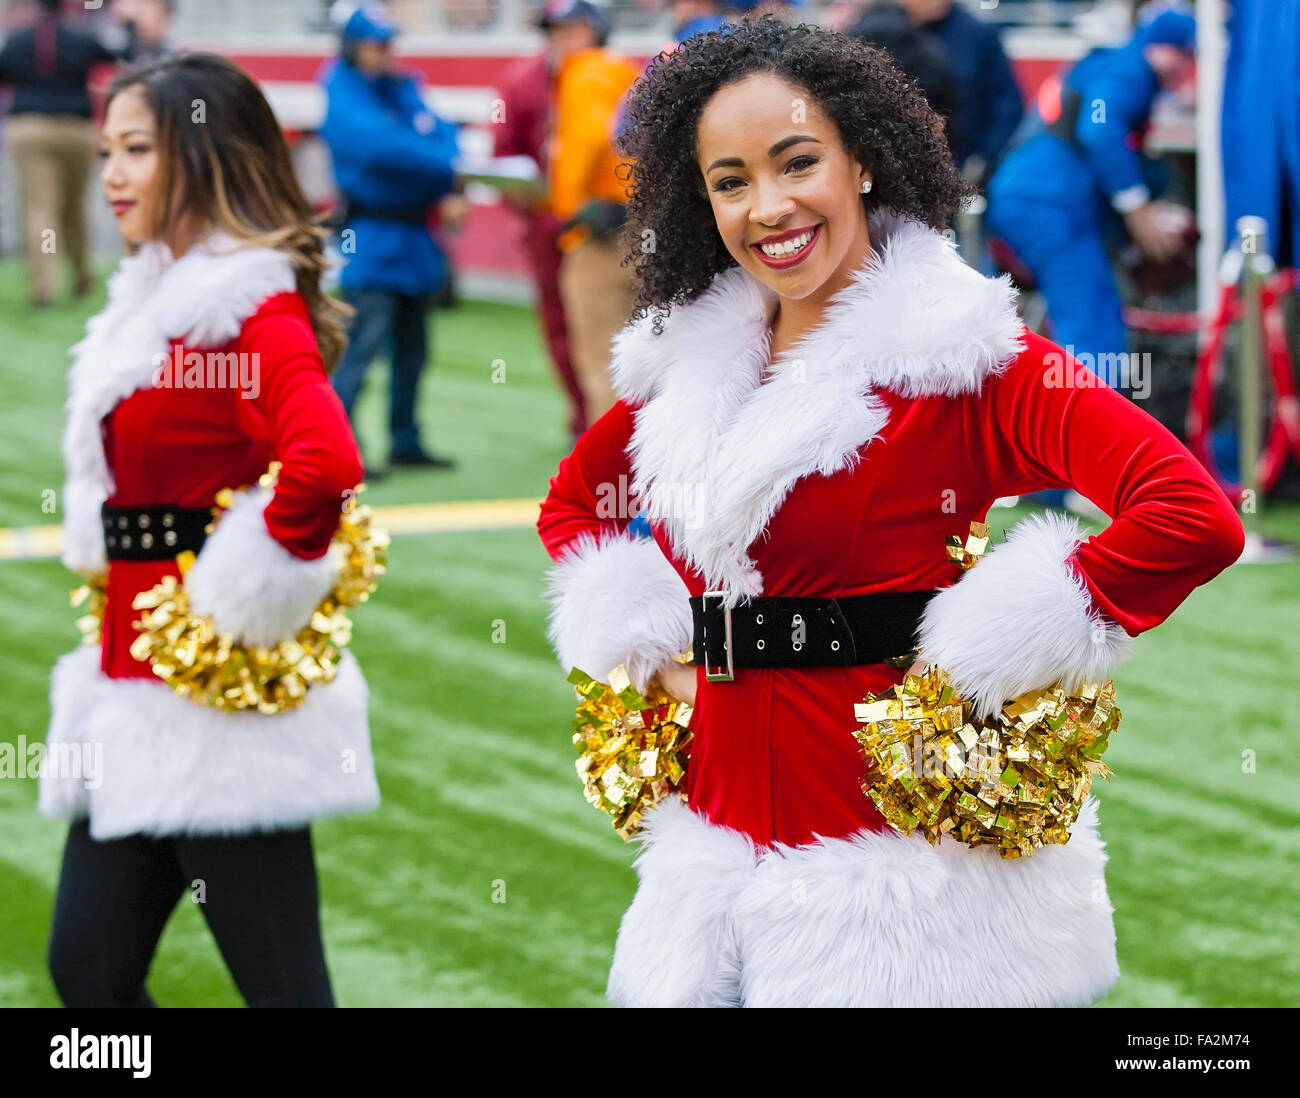 20 décembre 2015 : un San Francisco 49ers Goldrush Cheerleader au cours de la NFL football match entre les Bengals de Cincinnati et les San Francisco 49ers à Levi's Stadium à Santa Clara, CA. Les 49ers ont perdu au Bengals 24-14. Damon Tarver/Cal Sport Media Banque D'Images